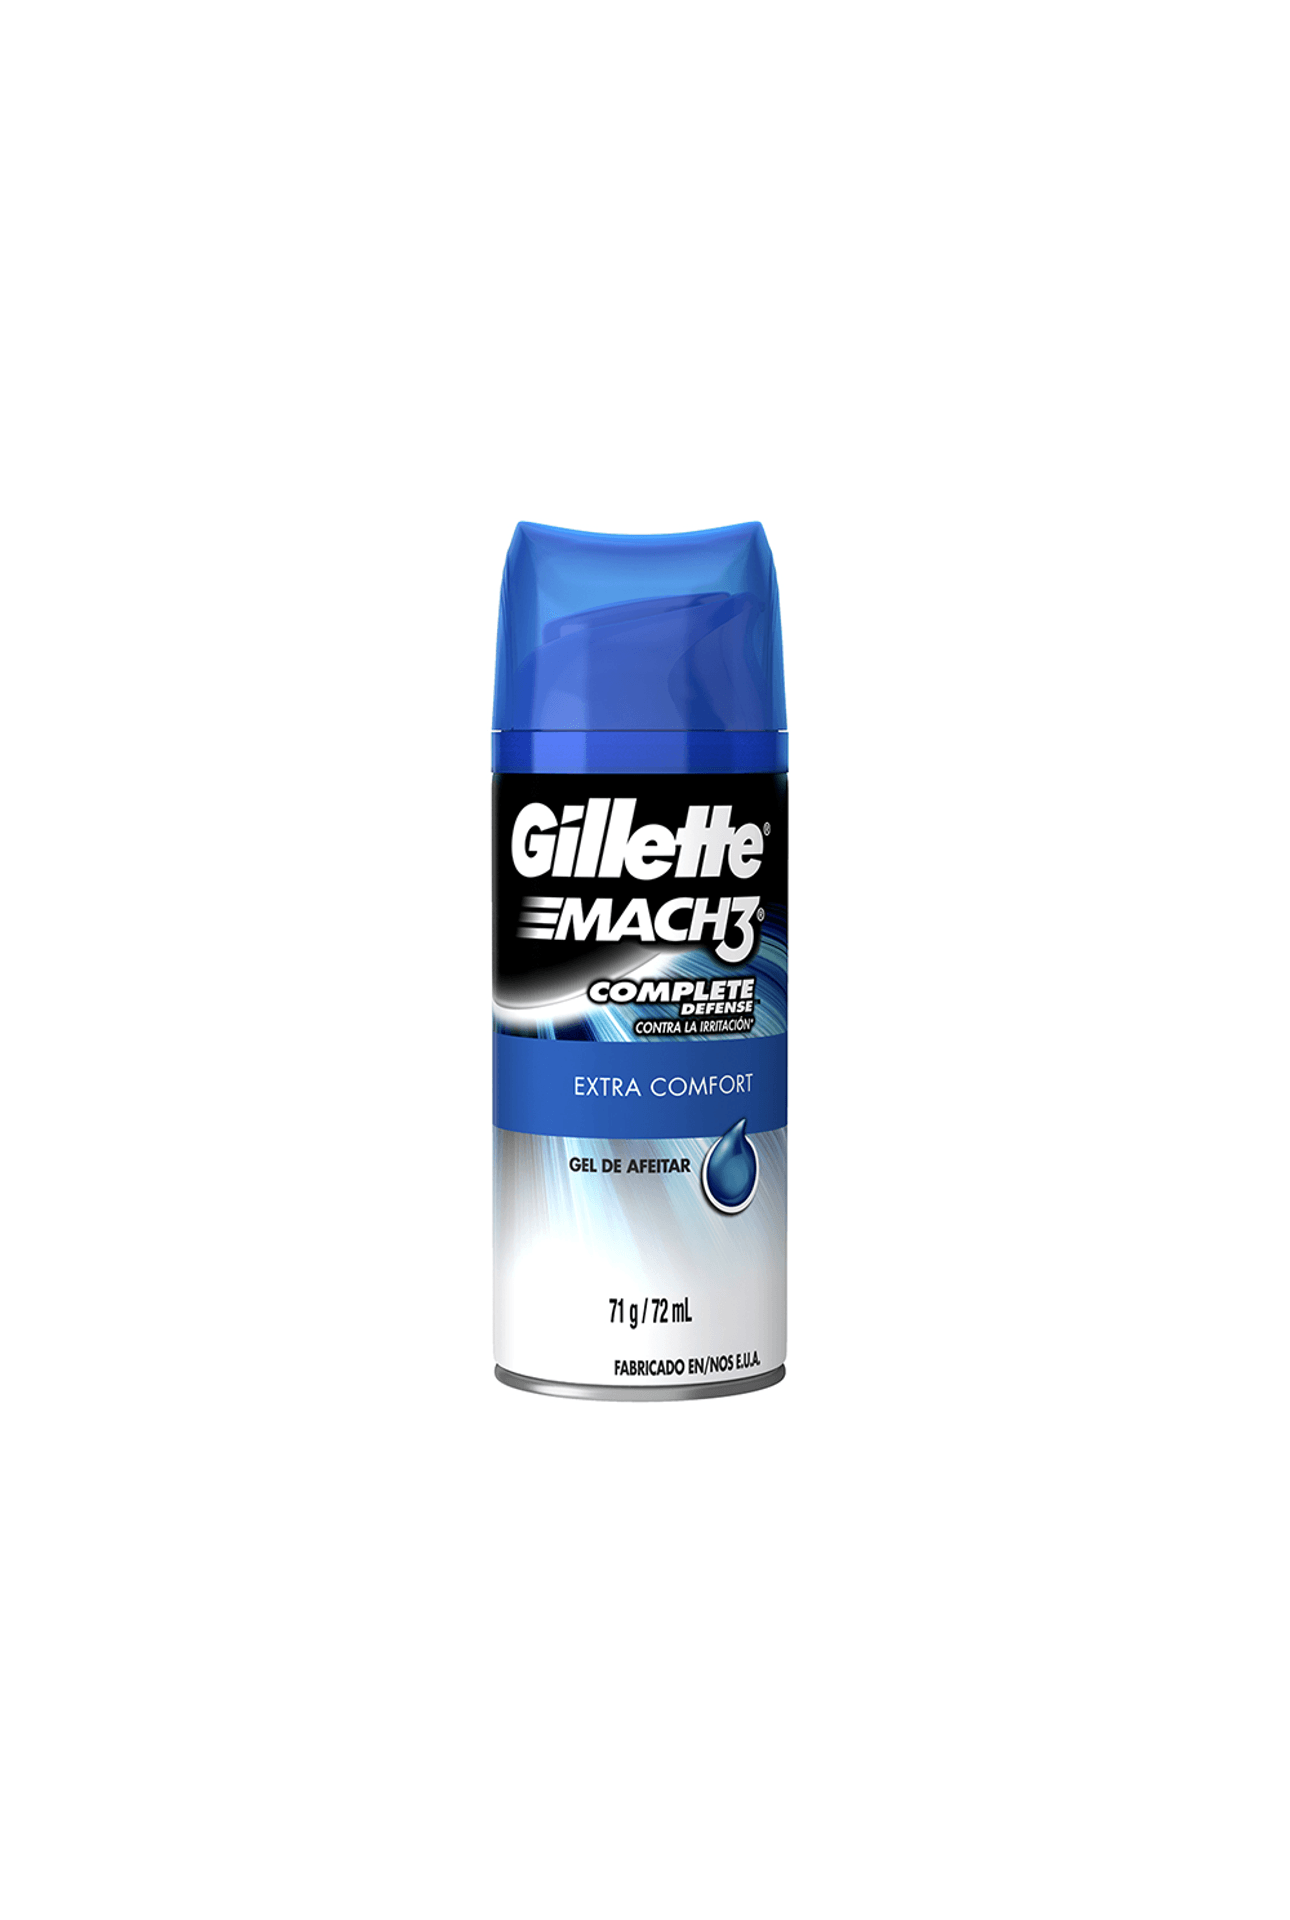 Gillette-Espuma-De-Afeitar-Mach3-Extra-Confort-x-71gr-7506339395518_img1